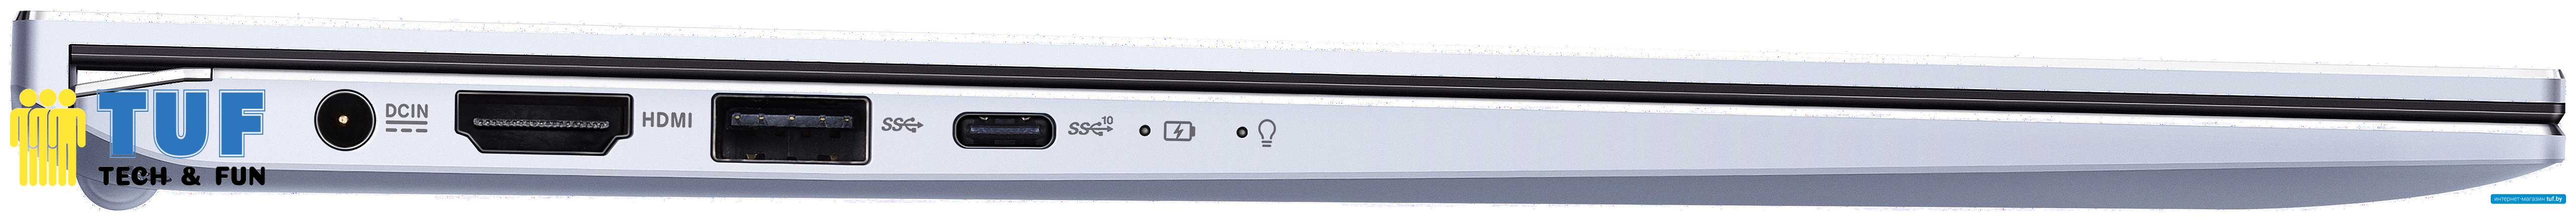 Ноутбук ASUS ZenBook 14 UX431FA-AM157R